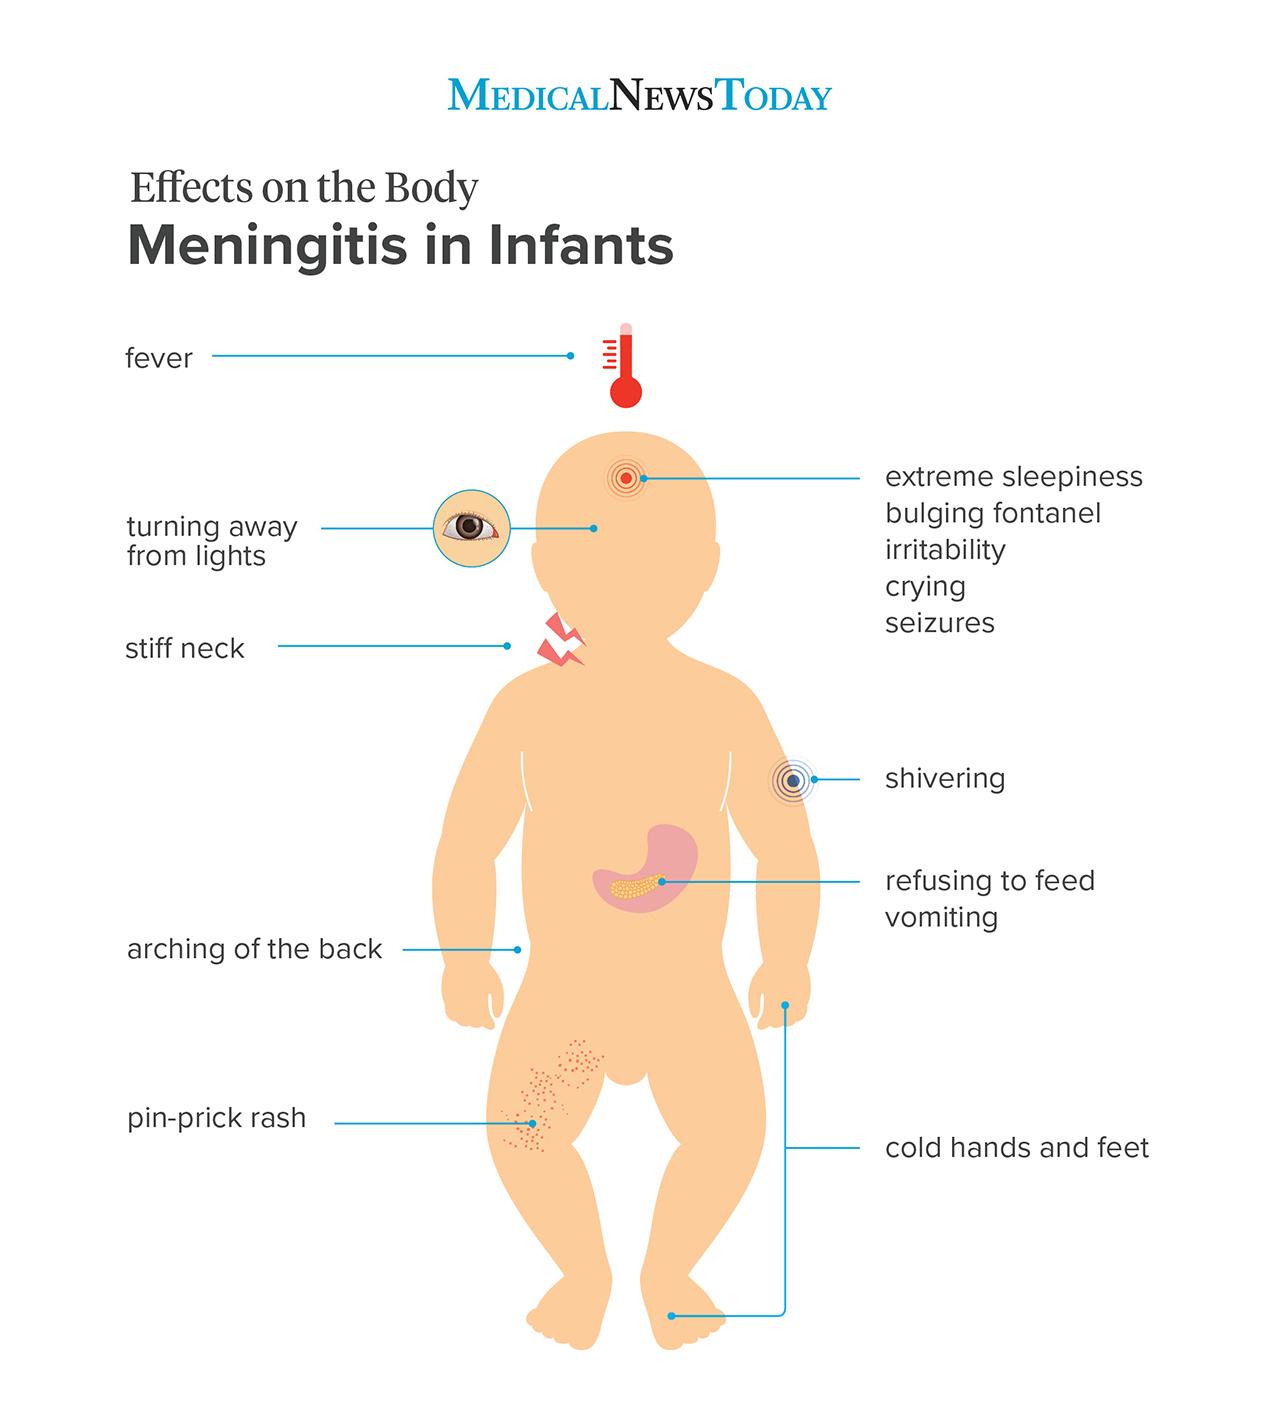 Meningitis in children